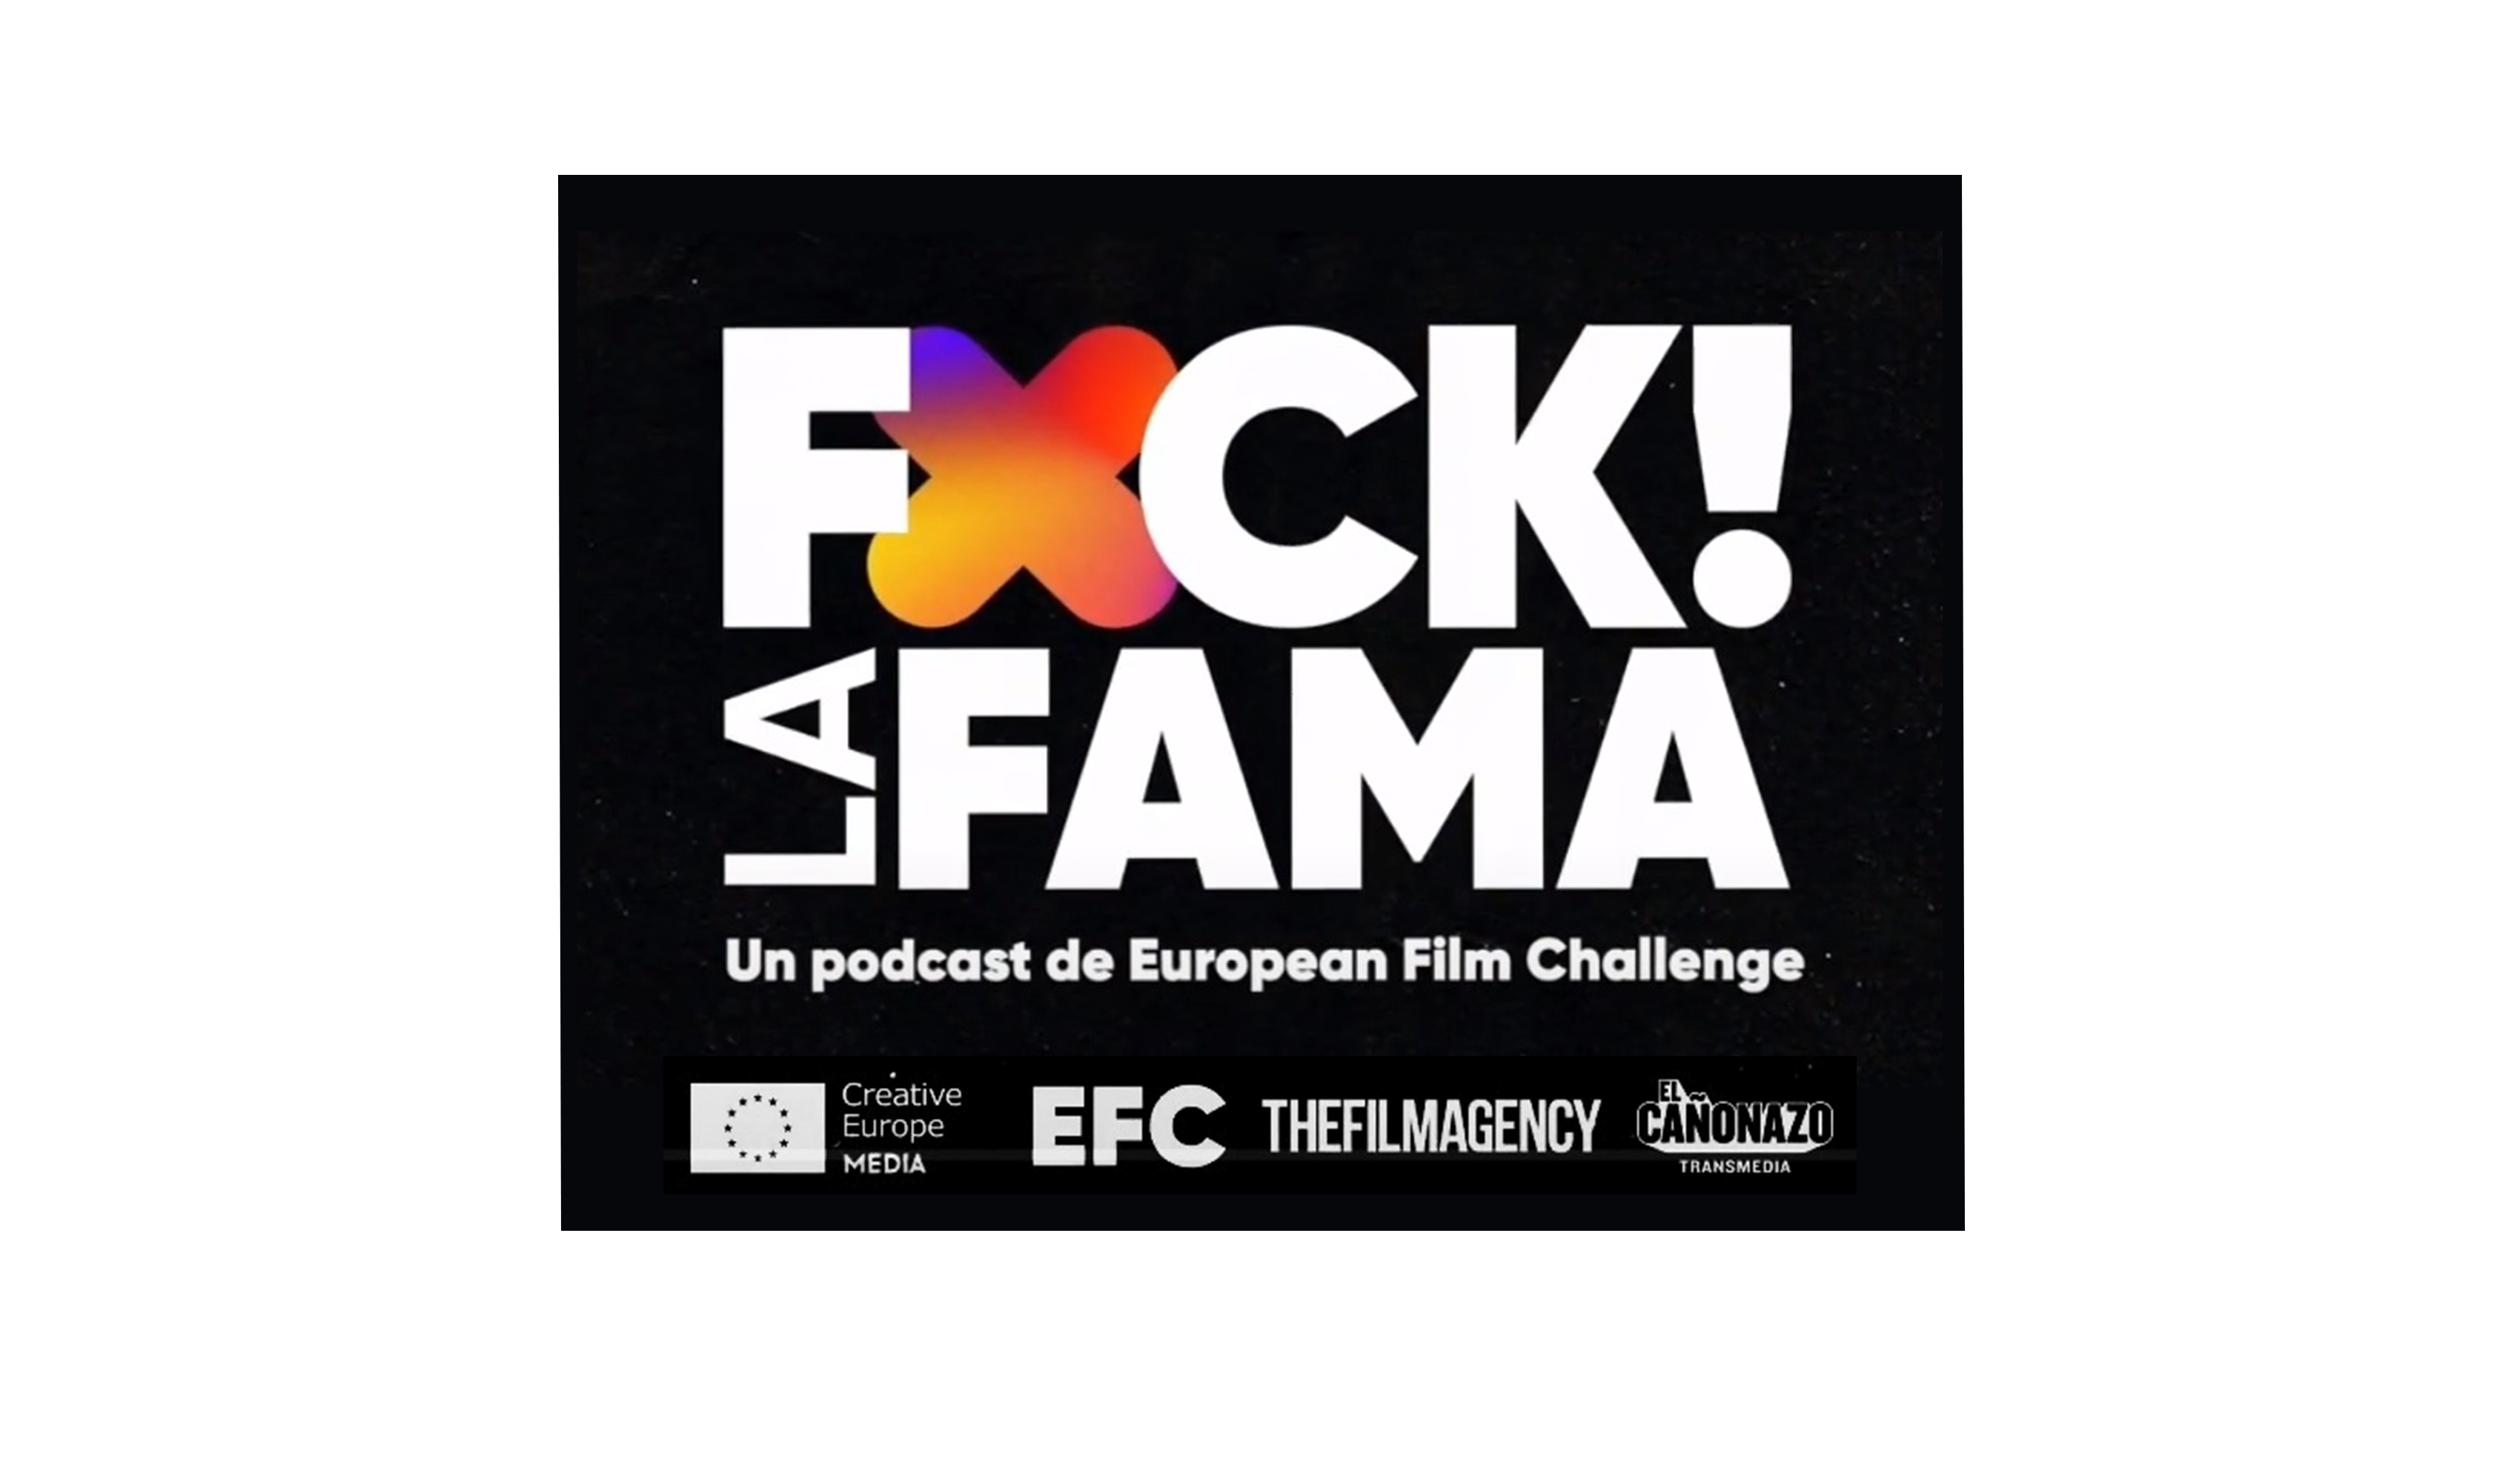 EUROPEAN FILM CHALLENGE: PODCAST FUCK LA FAMA